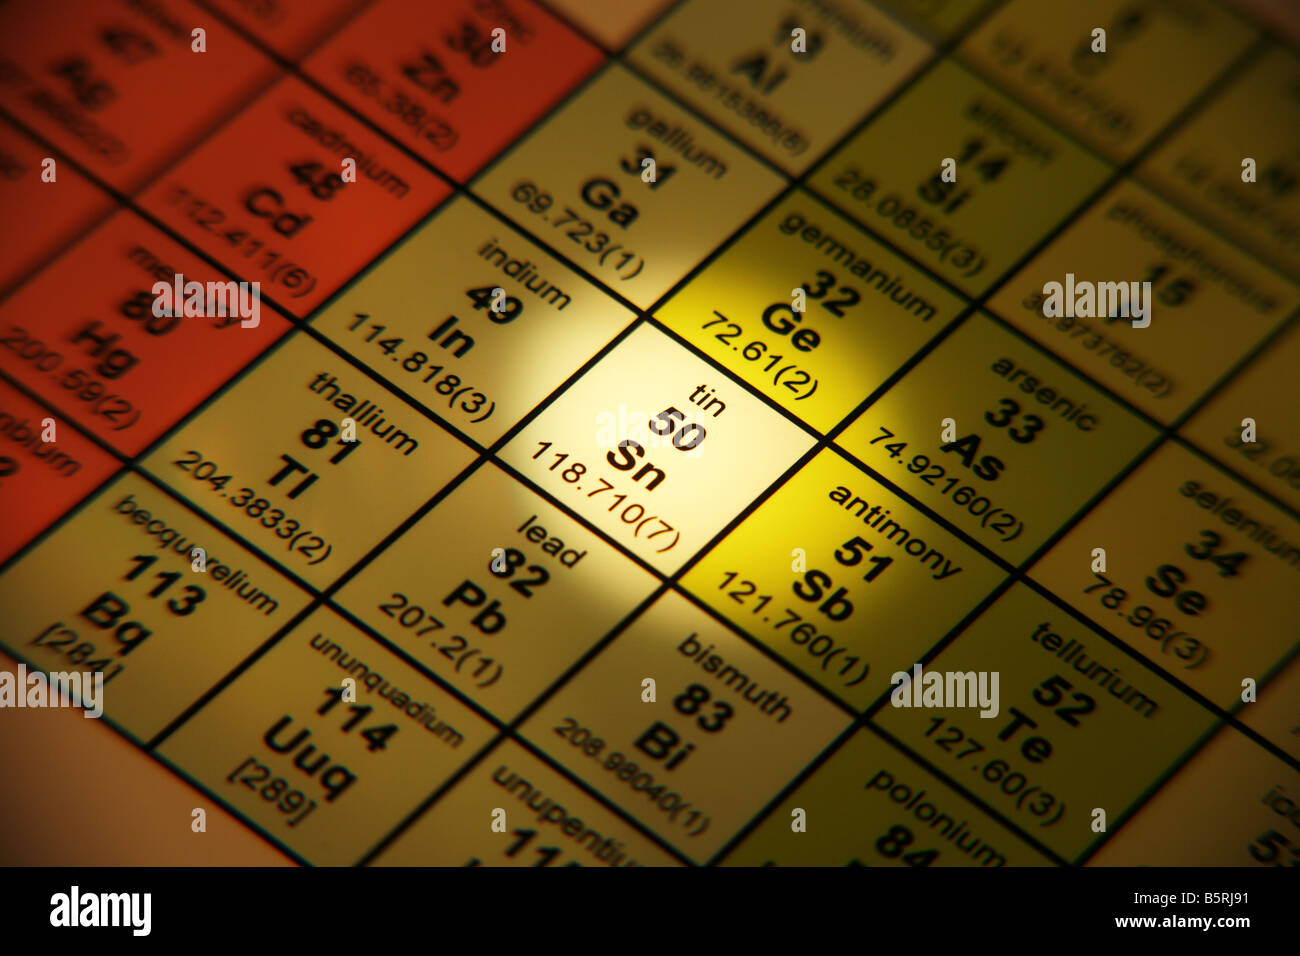 tin periodic table